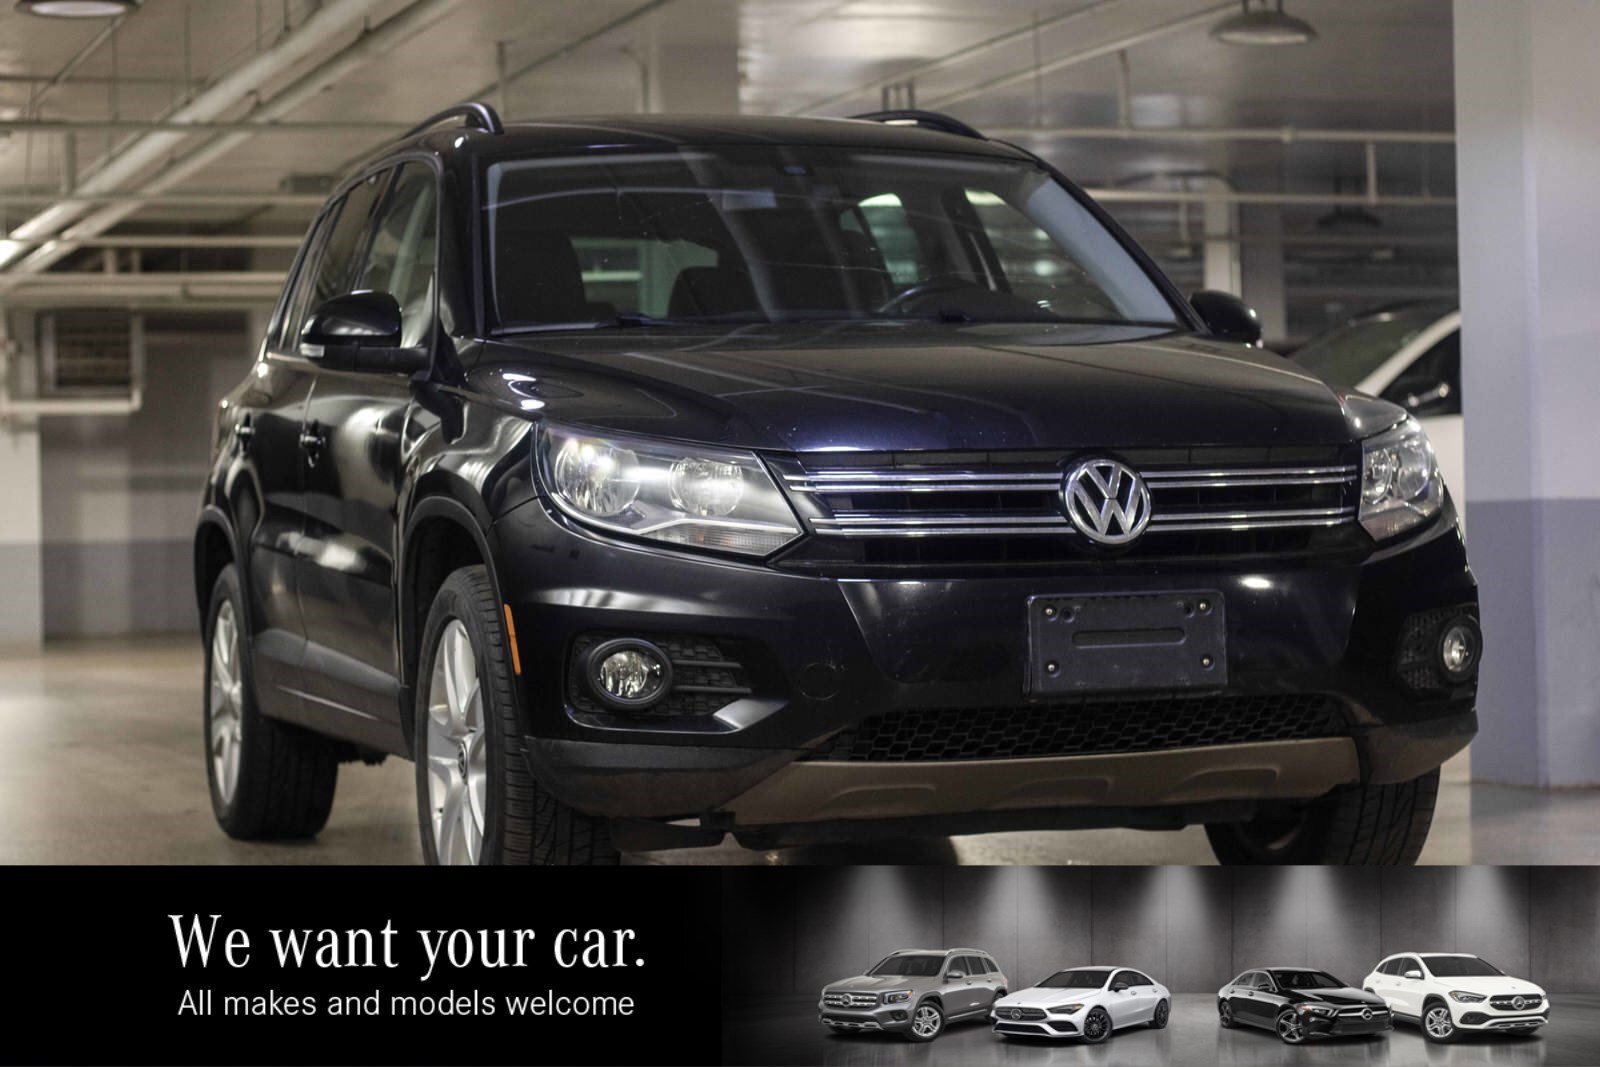 2015 Volkswagen Tiguan Comfortline